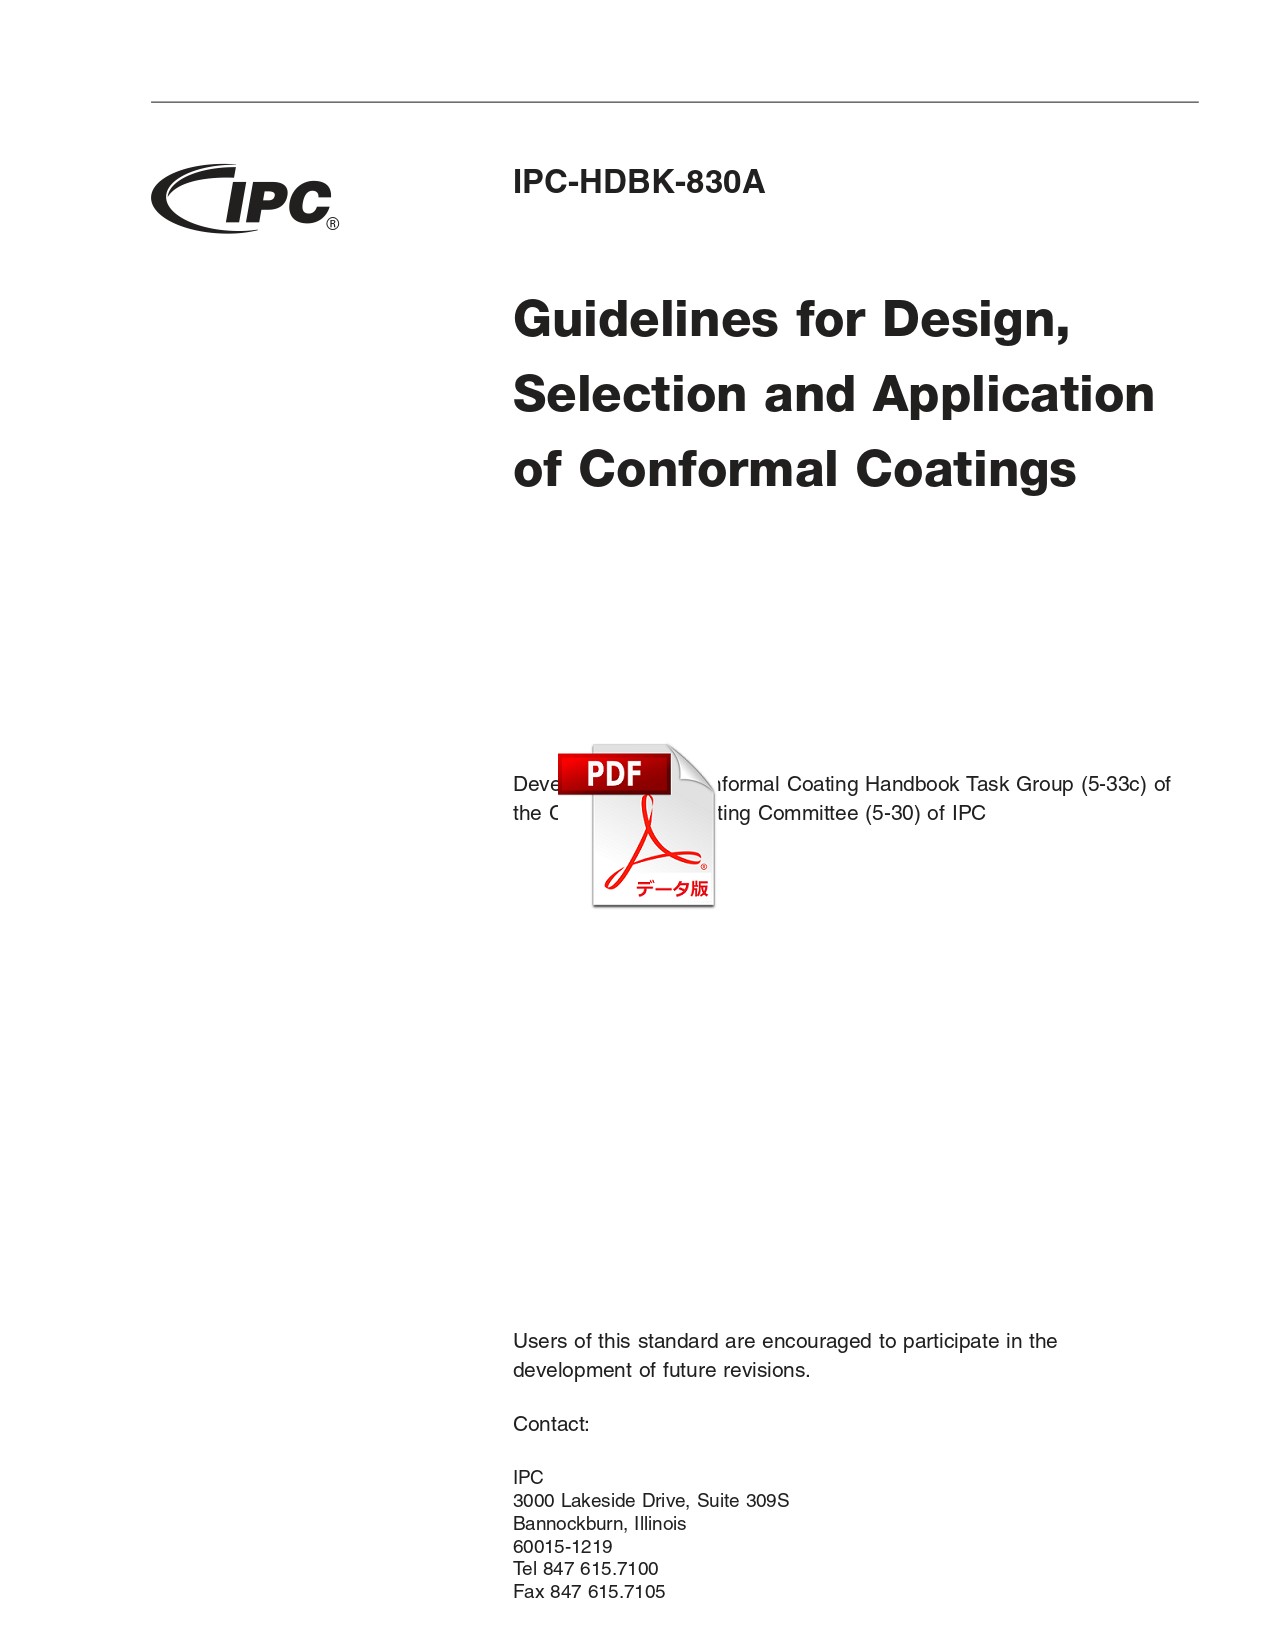 【英語版】IPC-HDBK-830A: Guidelines for Design, Selection, and Application of Conformal Coatings